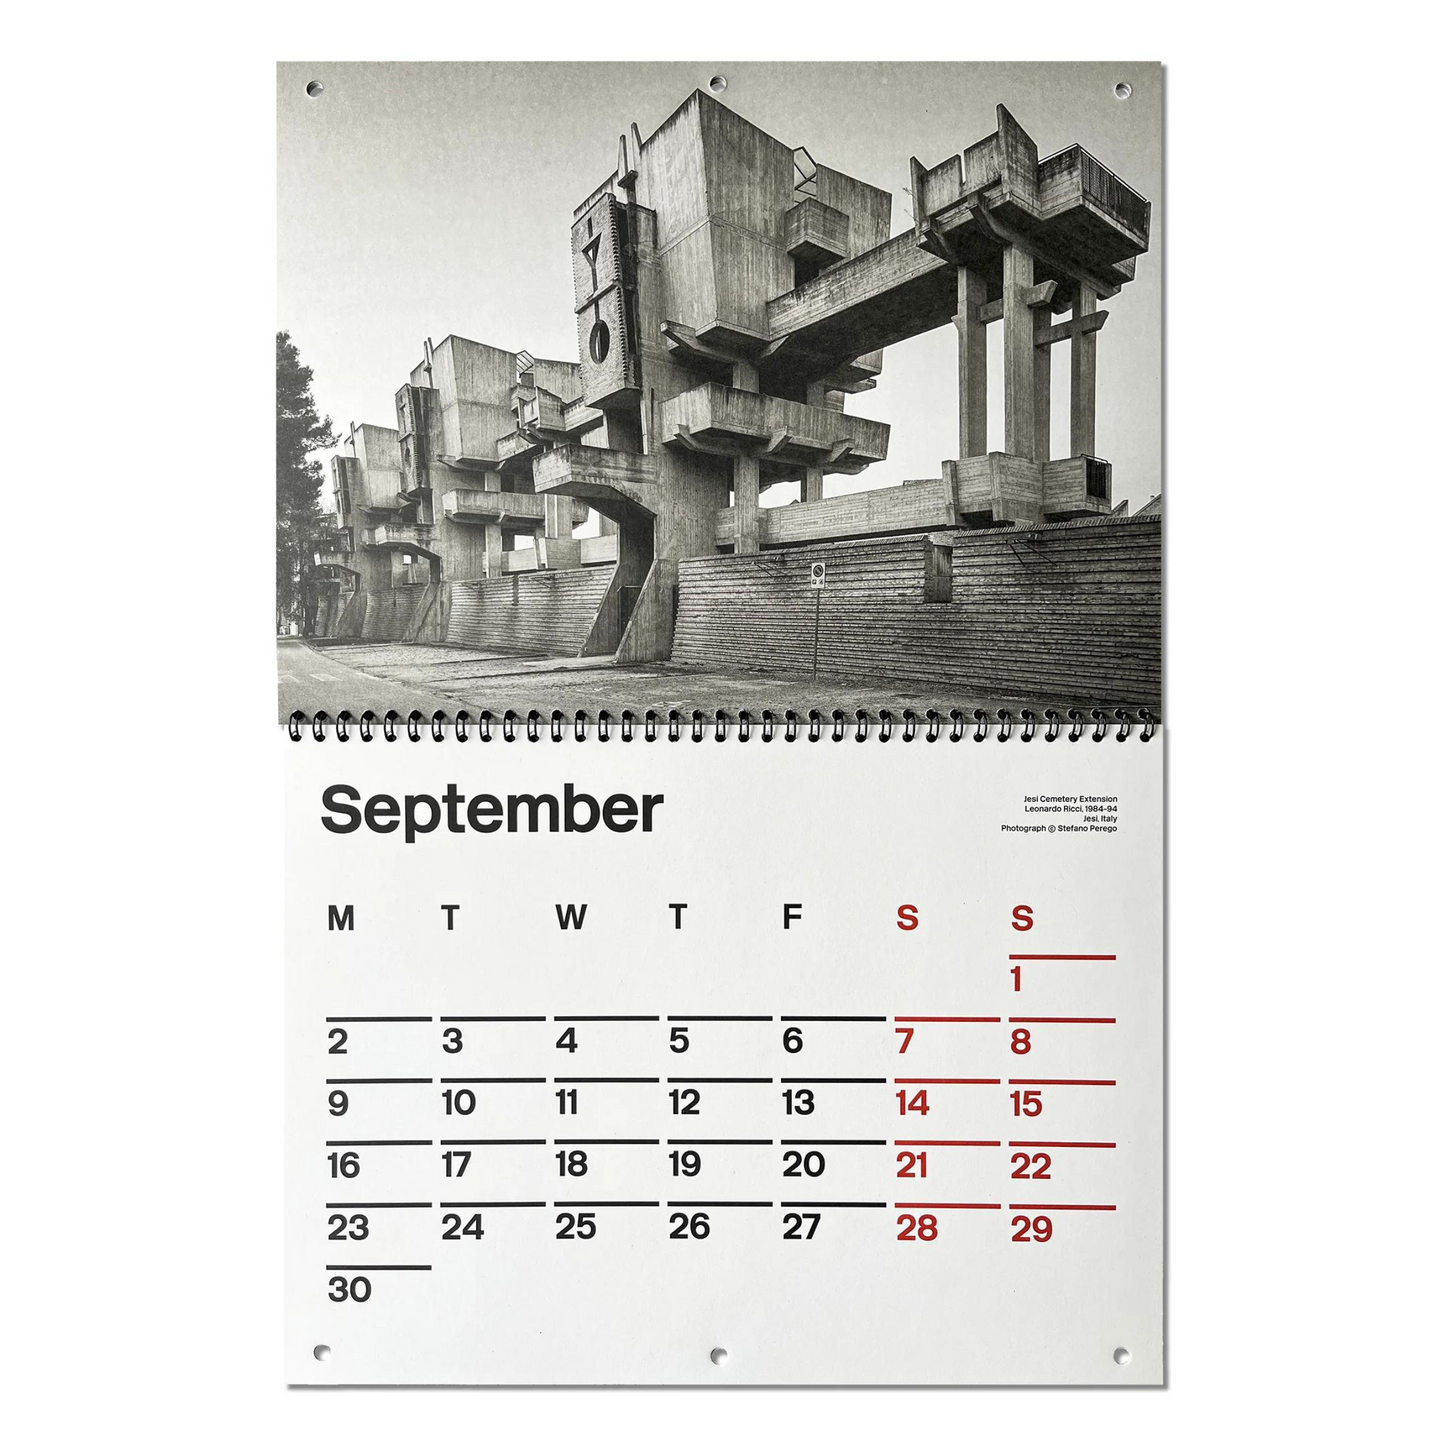 Brutalist 2024 Calendar